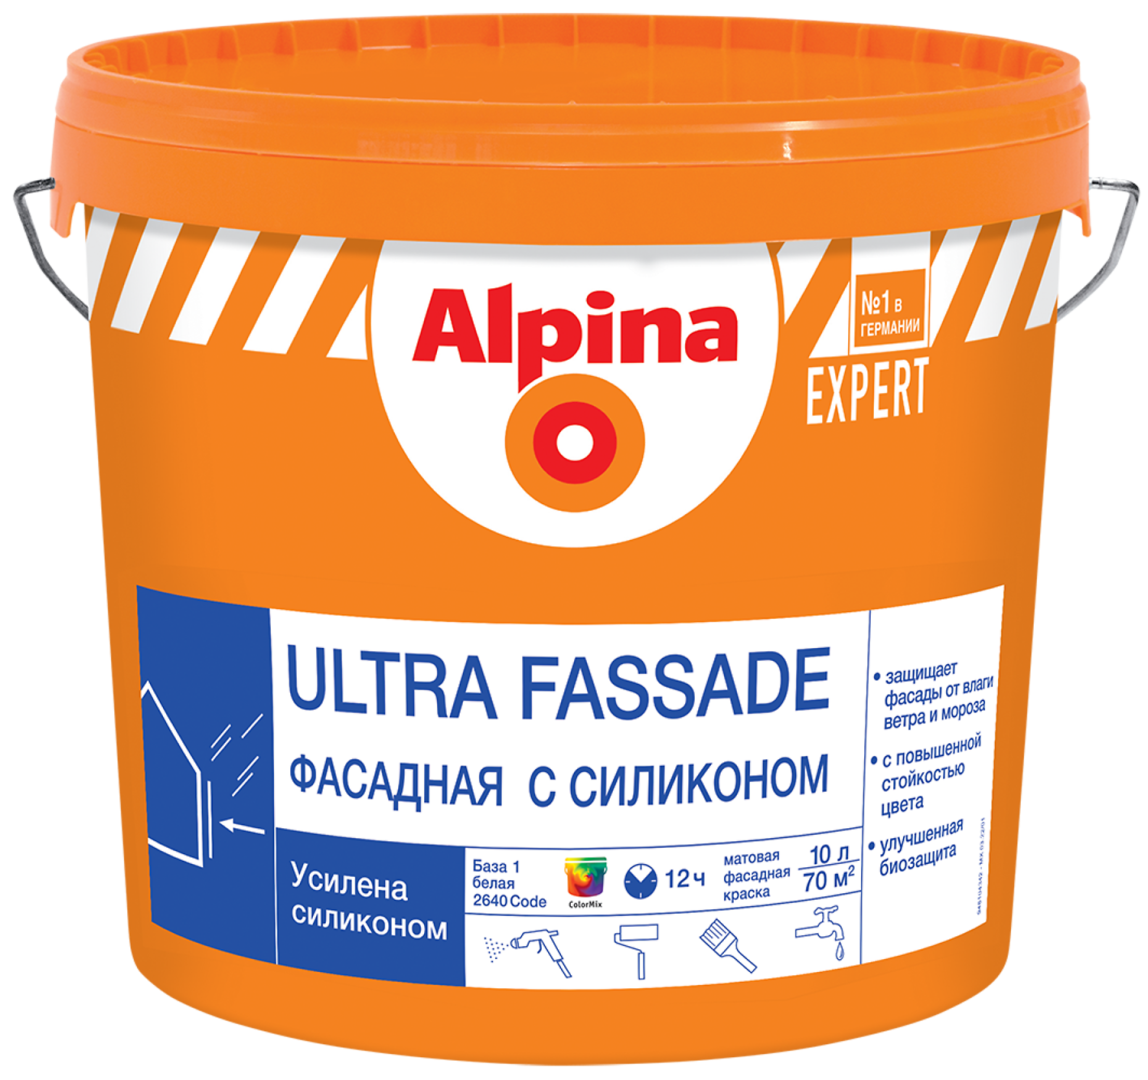 ALPINA EXPERT ULTRA FASSADE краска для наружных работ, фасадная с силиконом, База 1 (10л) АКЦИЯ